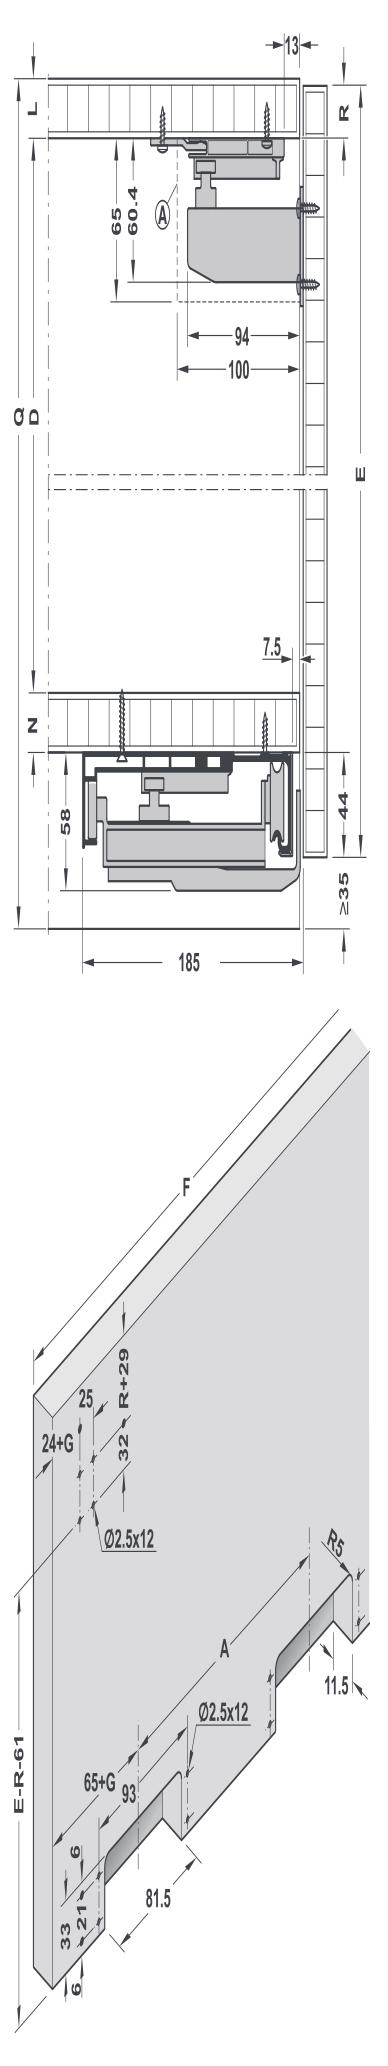 kalınlığı (L) Yan panel kalınlığı (M) Alt panel kalınlığı (N) Orta panel kalınlığı (O) Alt panel kapak basma mesafesi (P) Orta dikmeye göre kapak taşması (P) Alt panele kapak basma mesafesi (üst